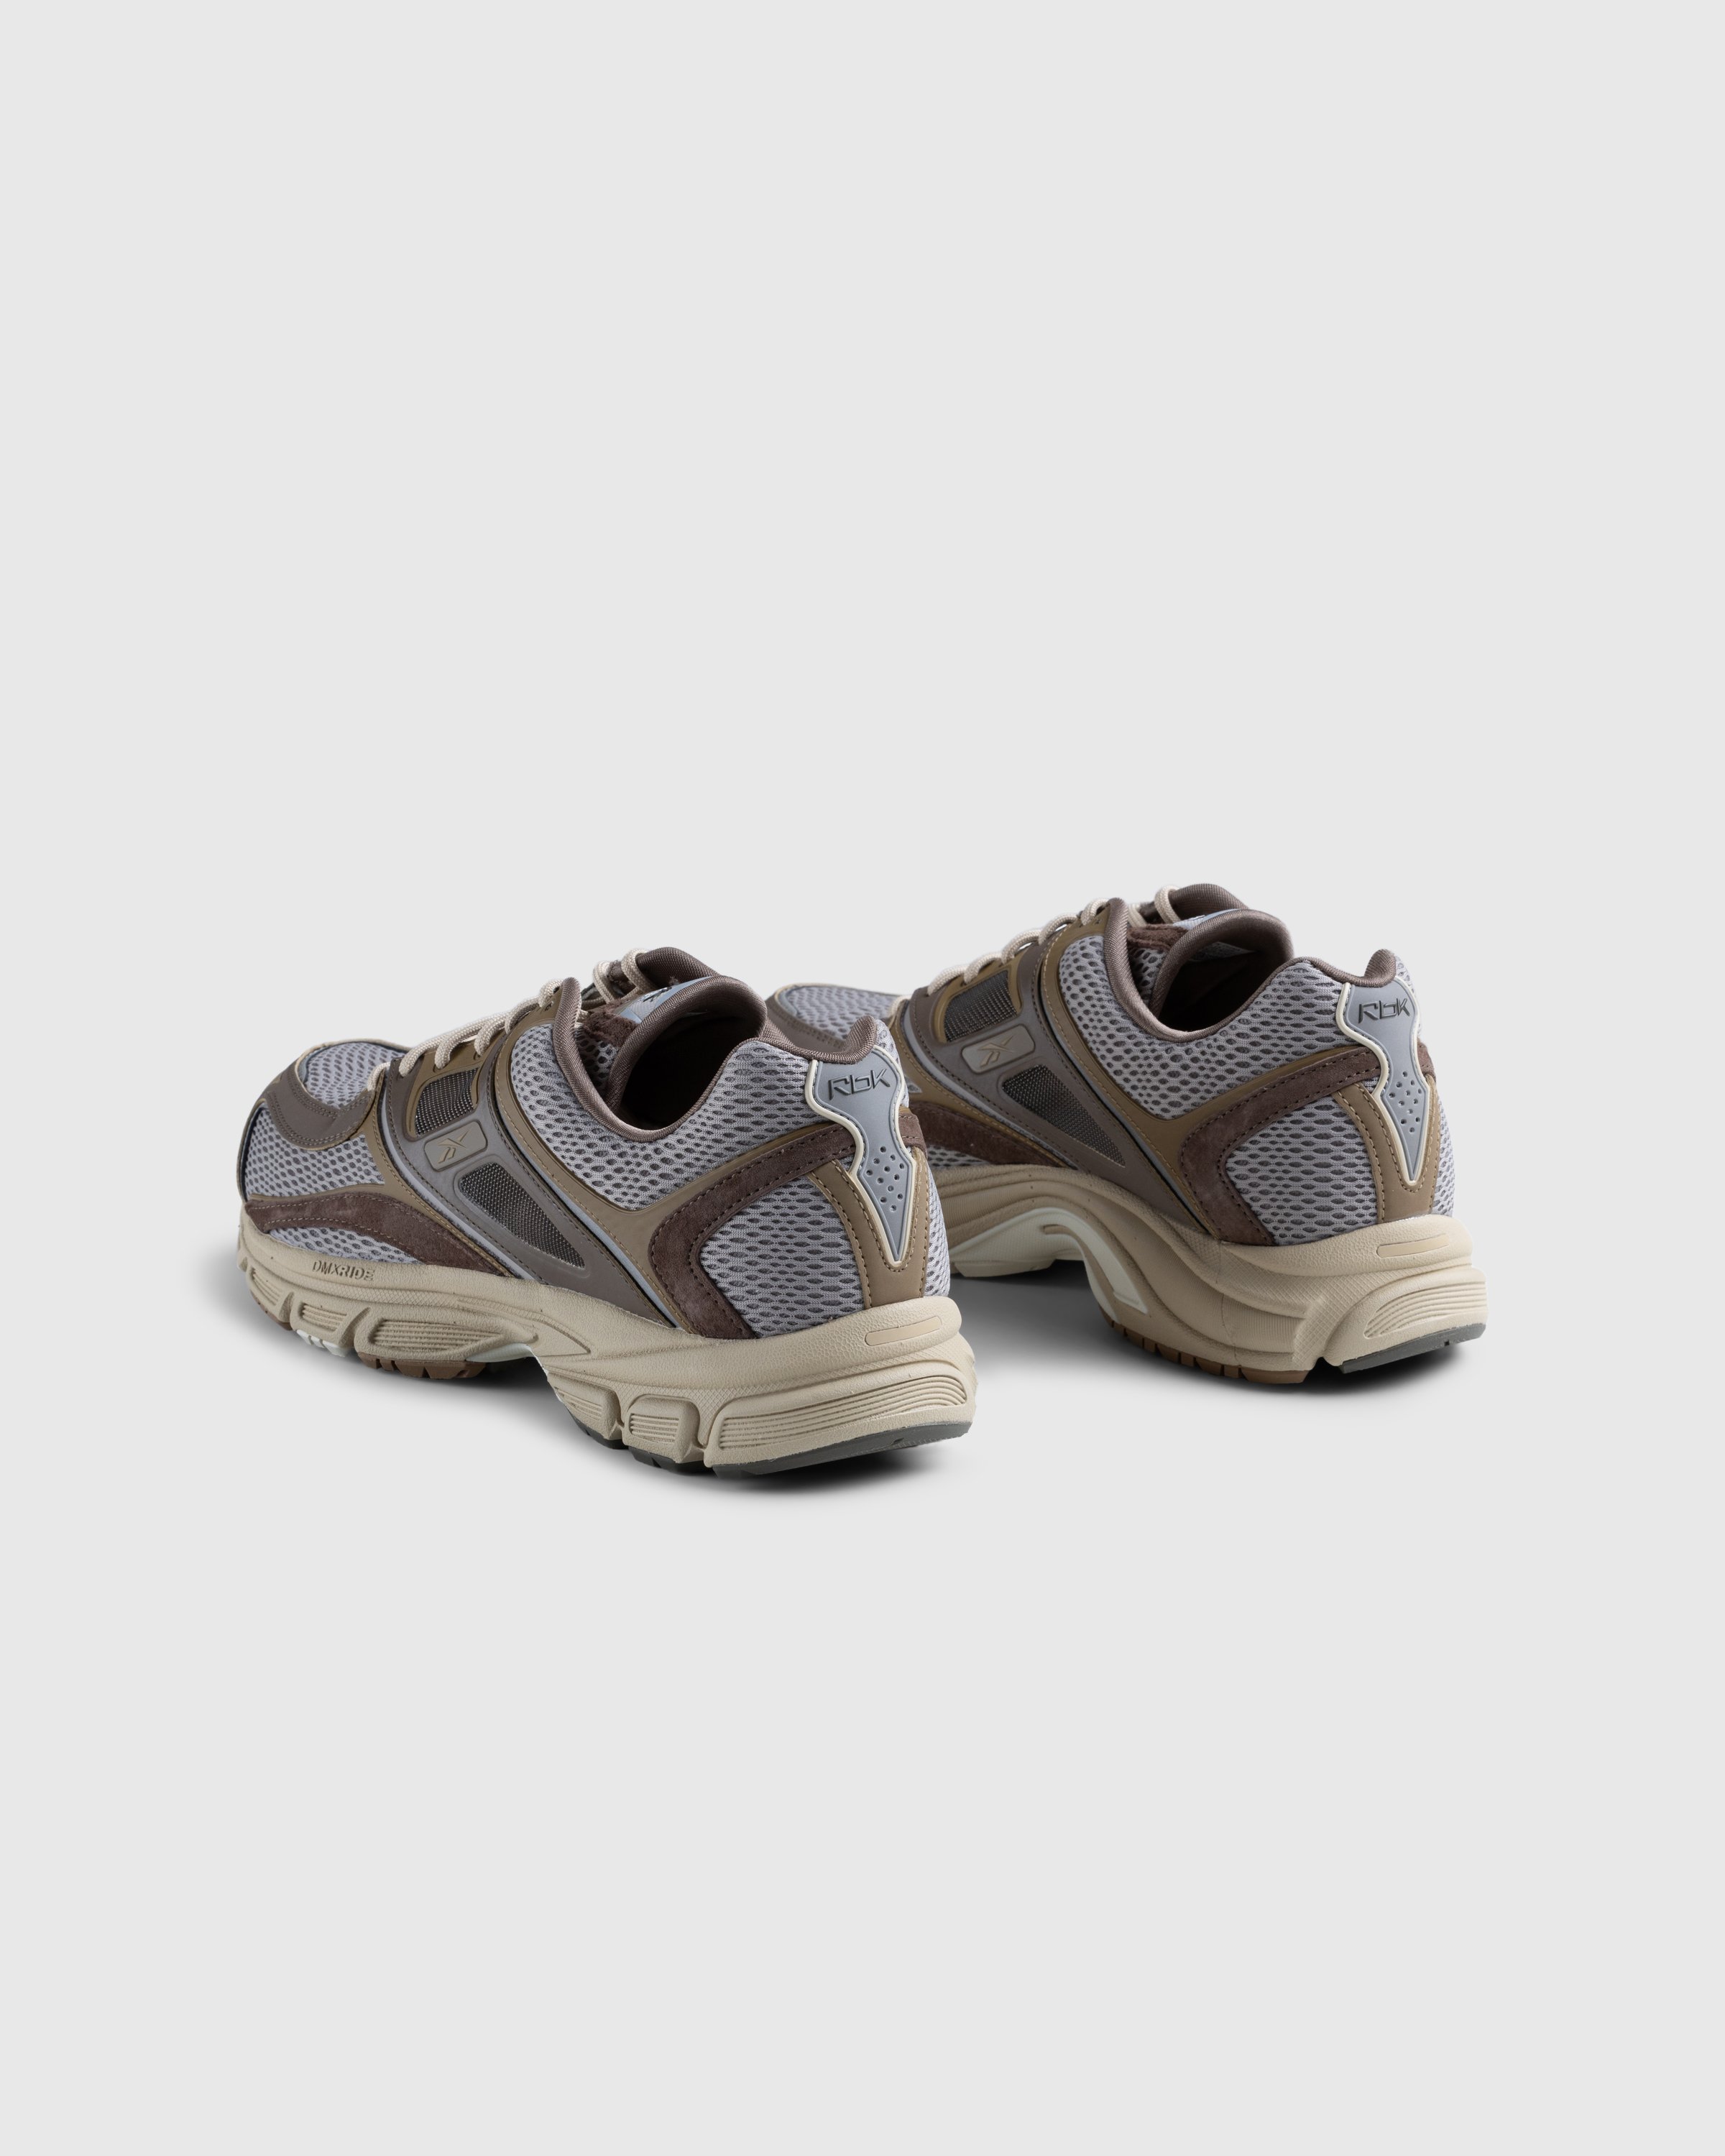 Reebok - Rbk Premier Trinity Kfs Ash/Utibro/Trebr Grey Brown - Footwear - Brown - Image 4